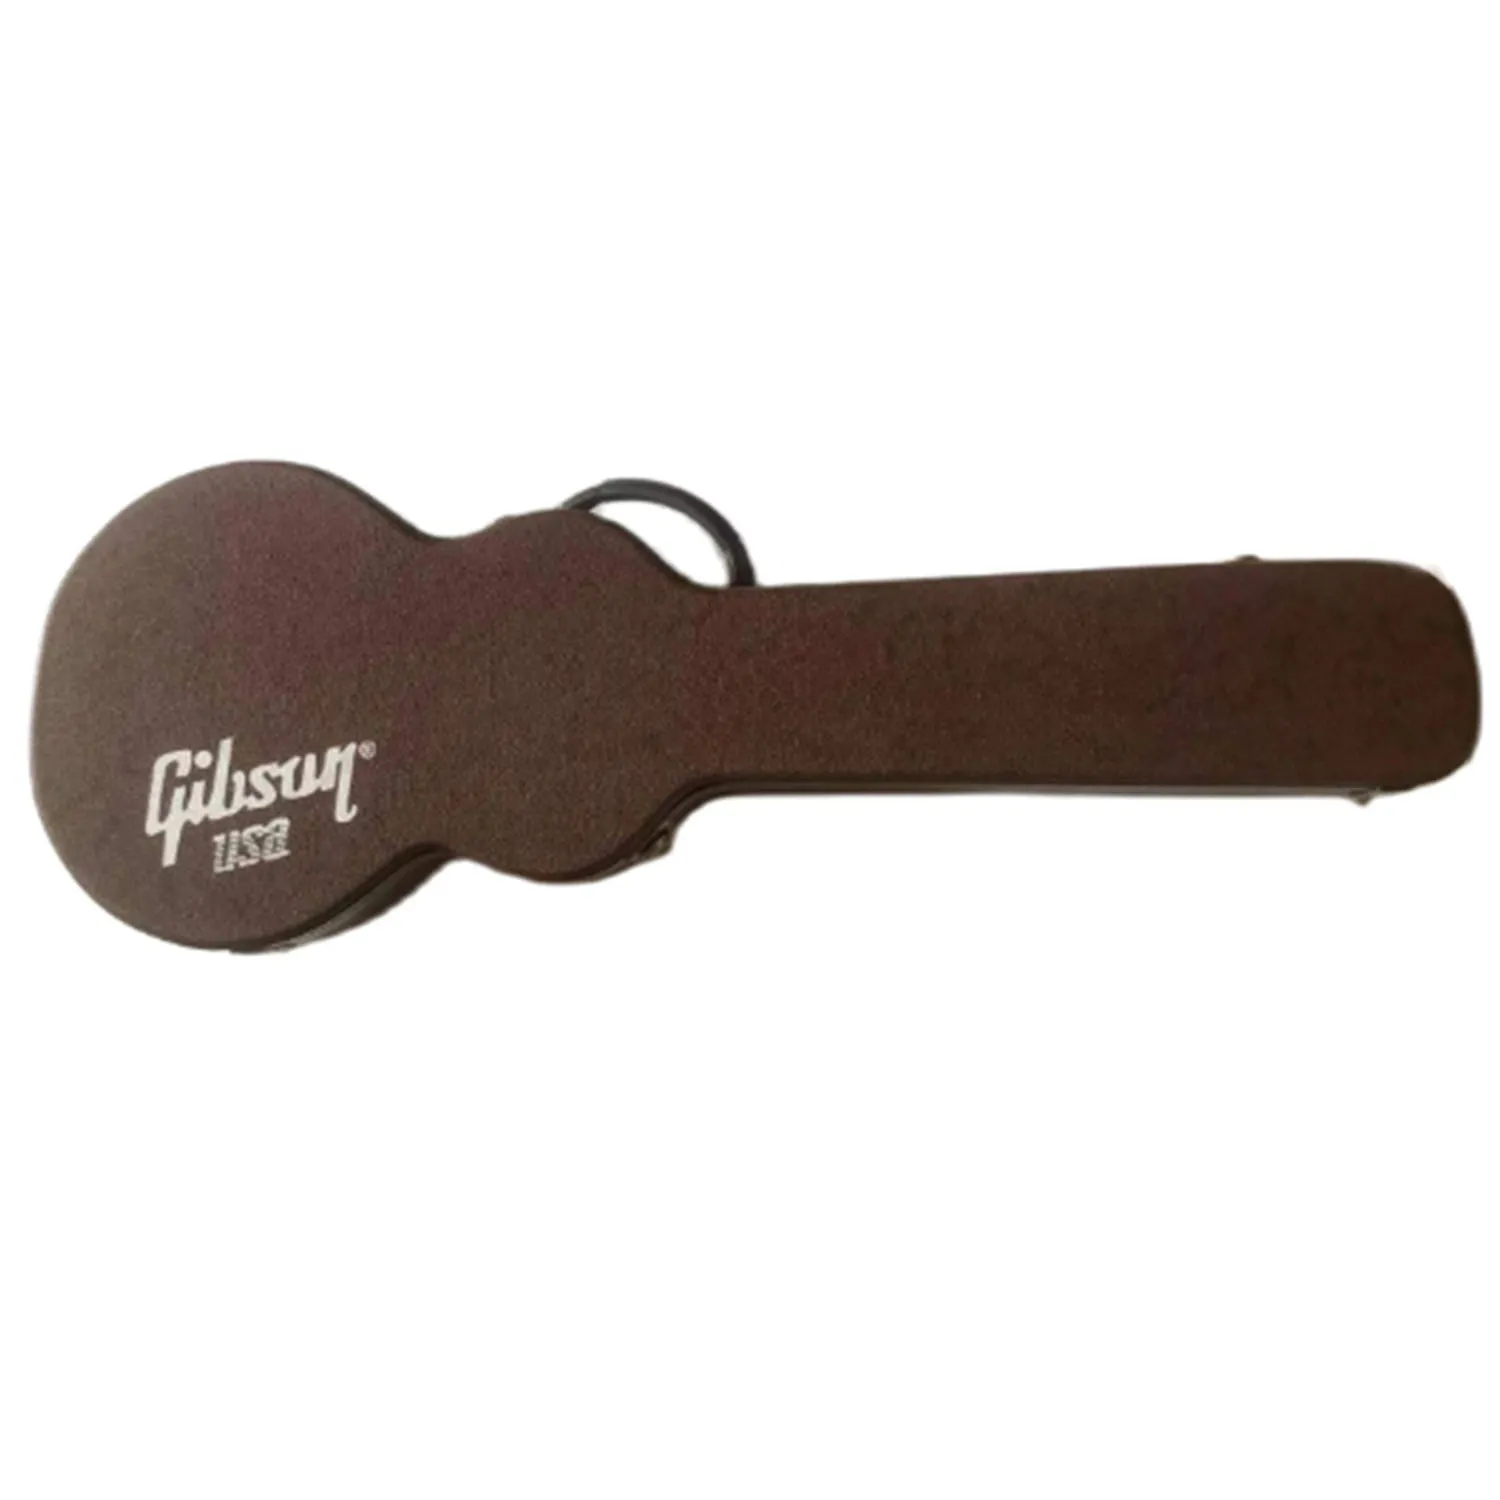 Lvybest bruin hardcase voor elektrische gitaar een hoog niveau dik bruin lederen binnenste linging zwart